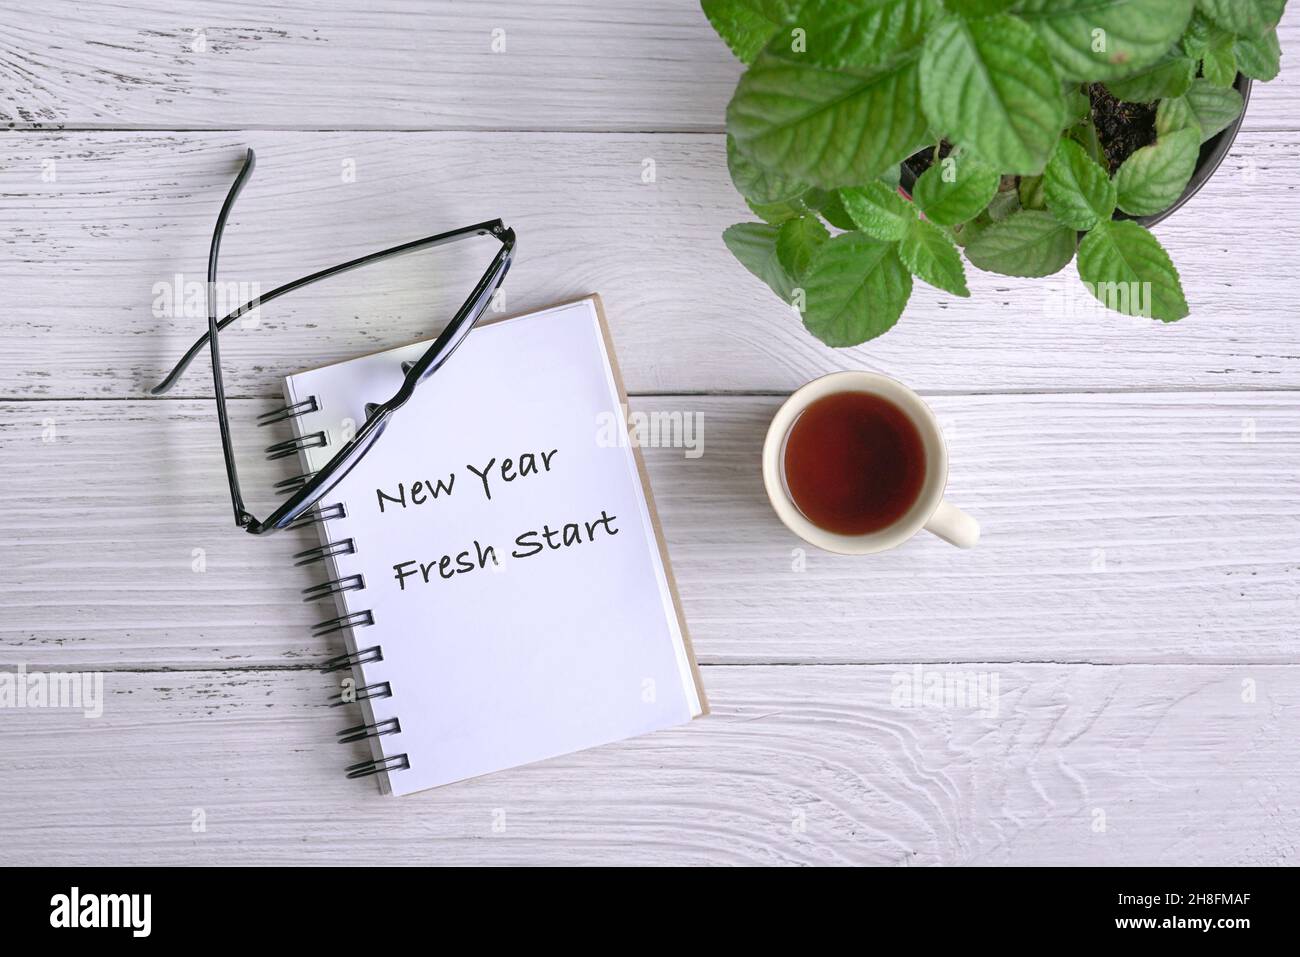 Blocco note con testo, inizio nuovo anno fresco, con caffè, occhiali e piante verdi sul tavolo. Vista dall'alto. Foto Stock